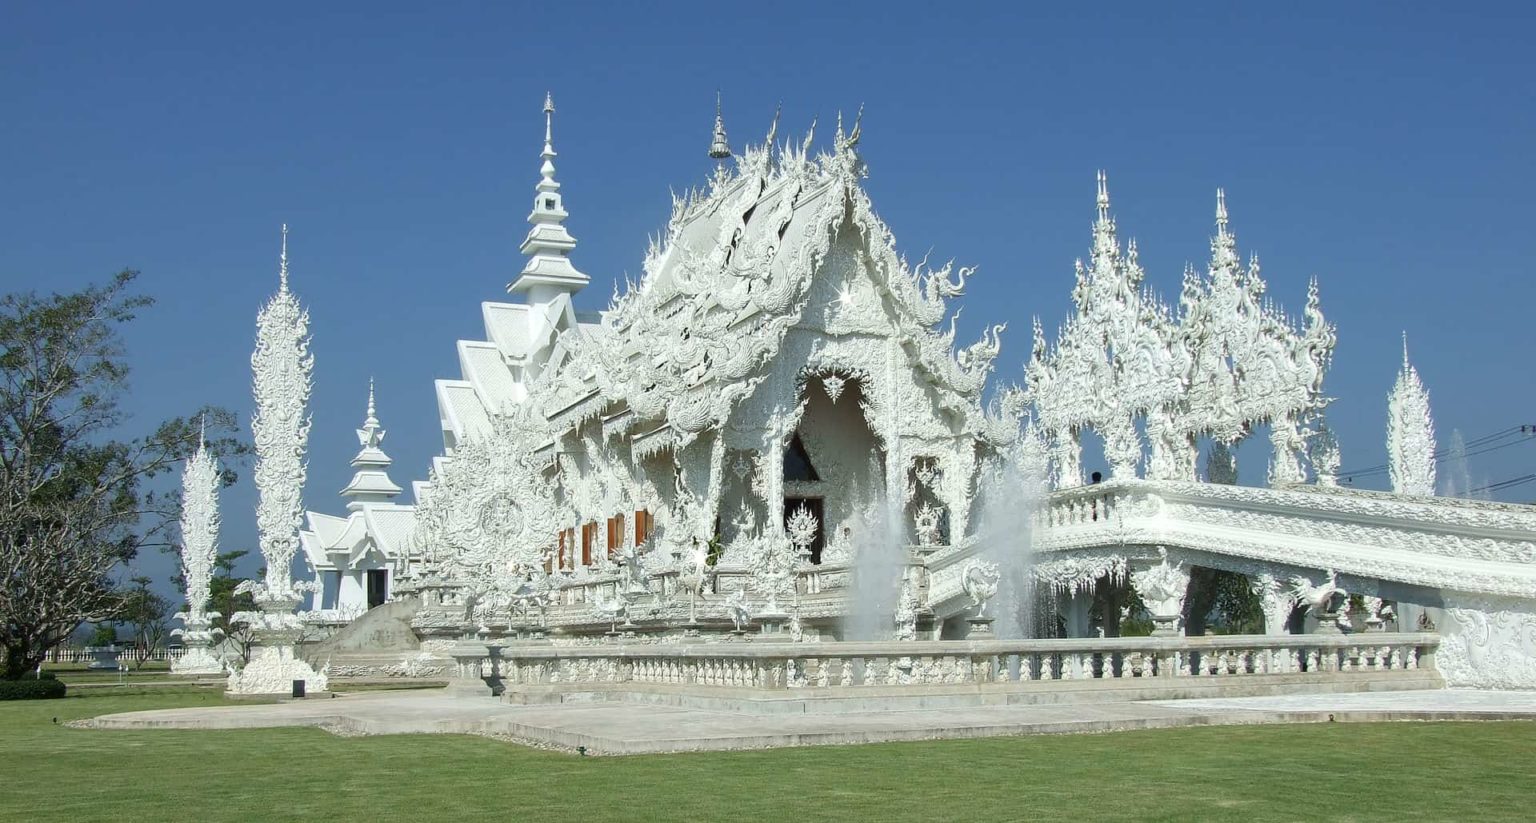 El sorprendente Templo Blanco de Tailandia: Templo blanco en Tailandia